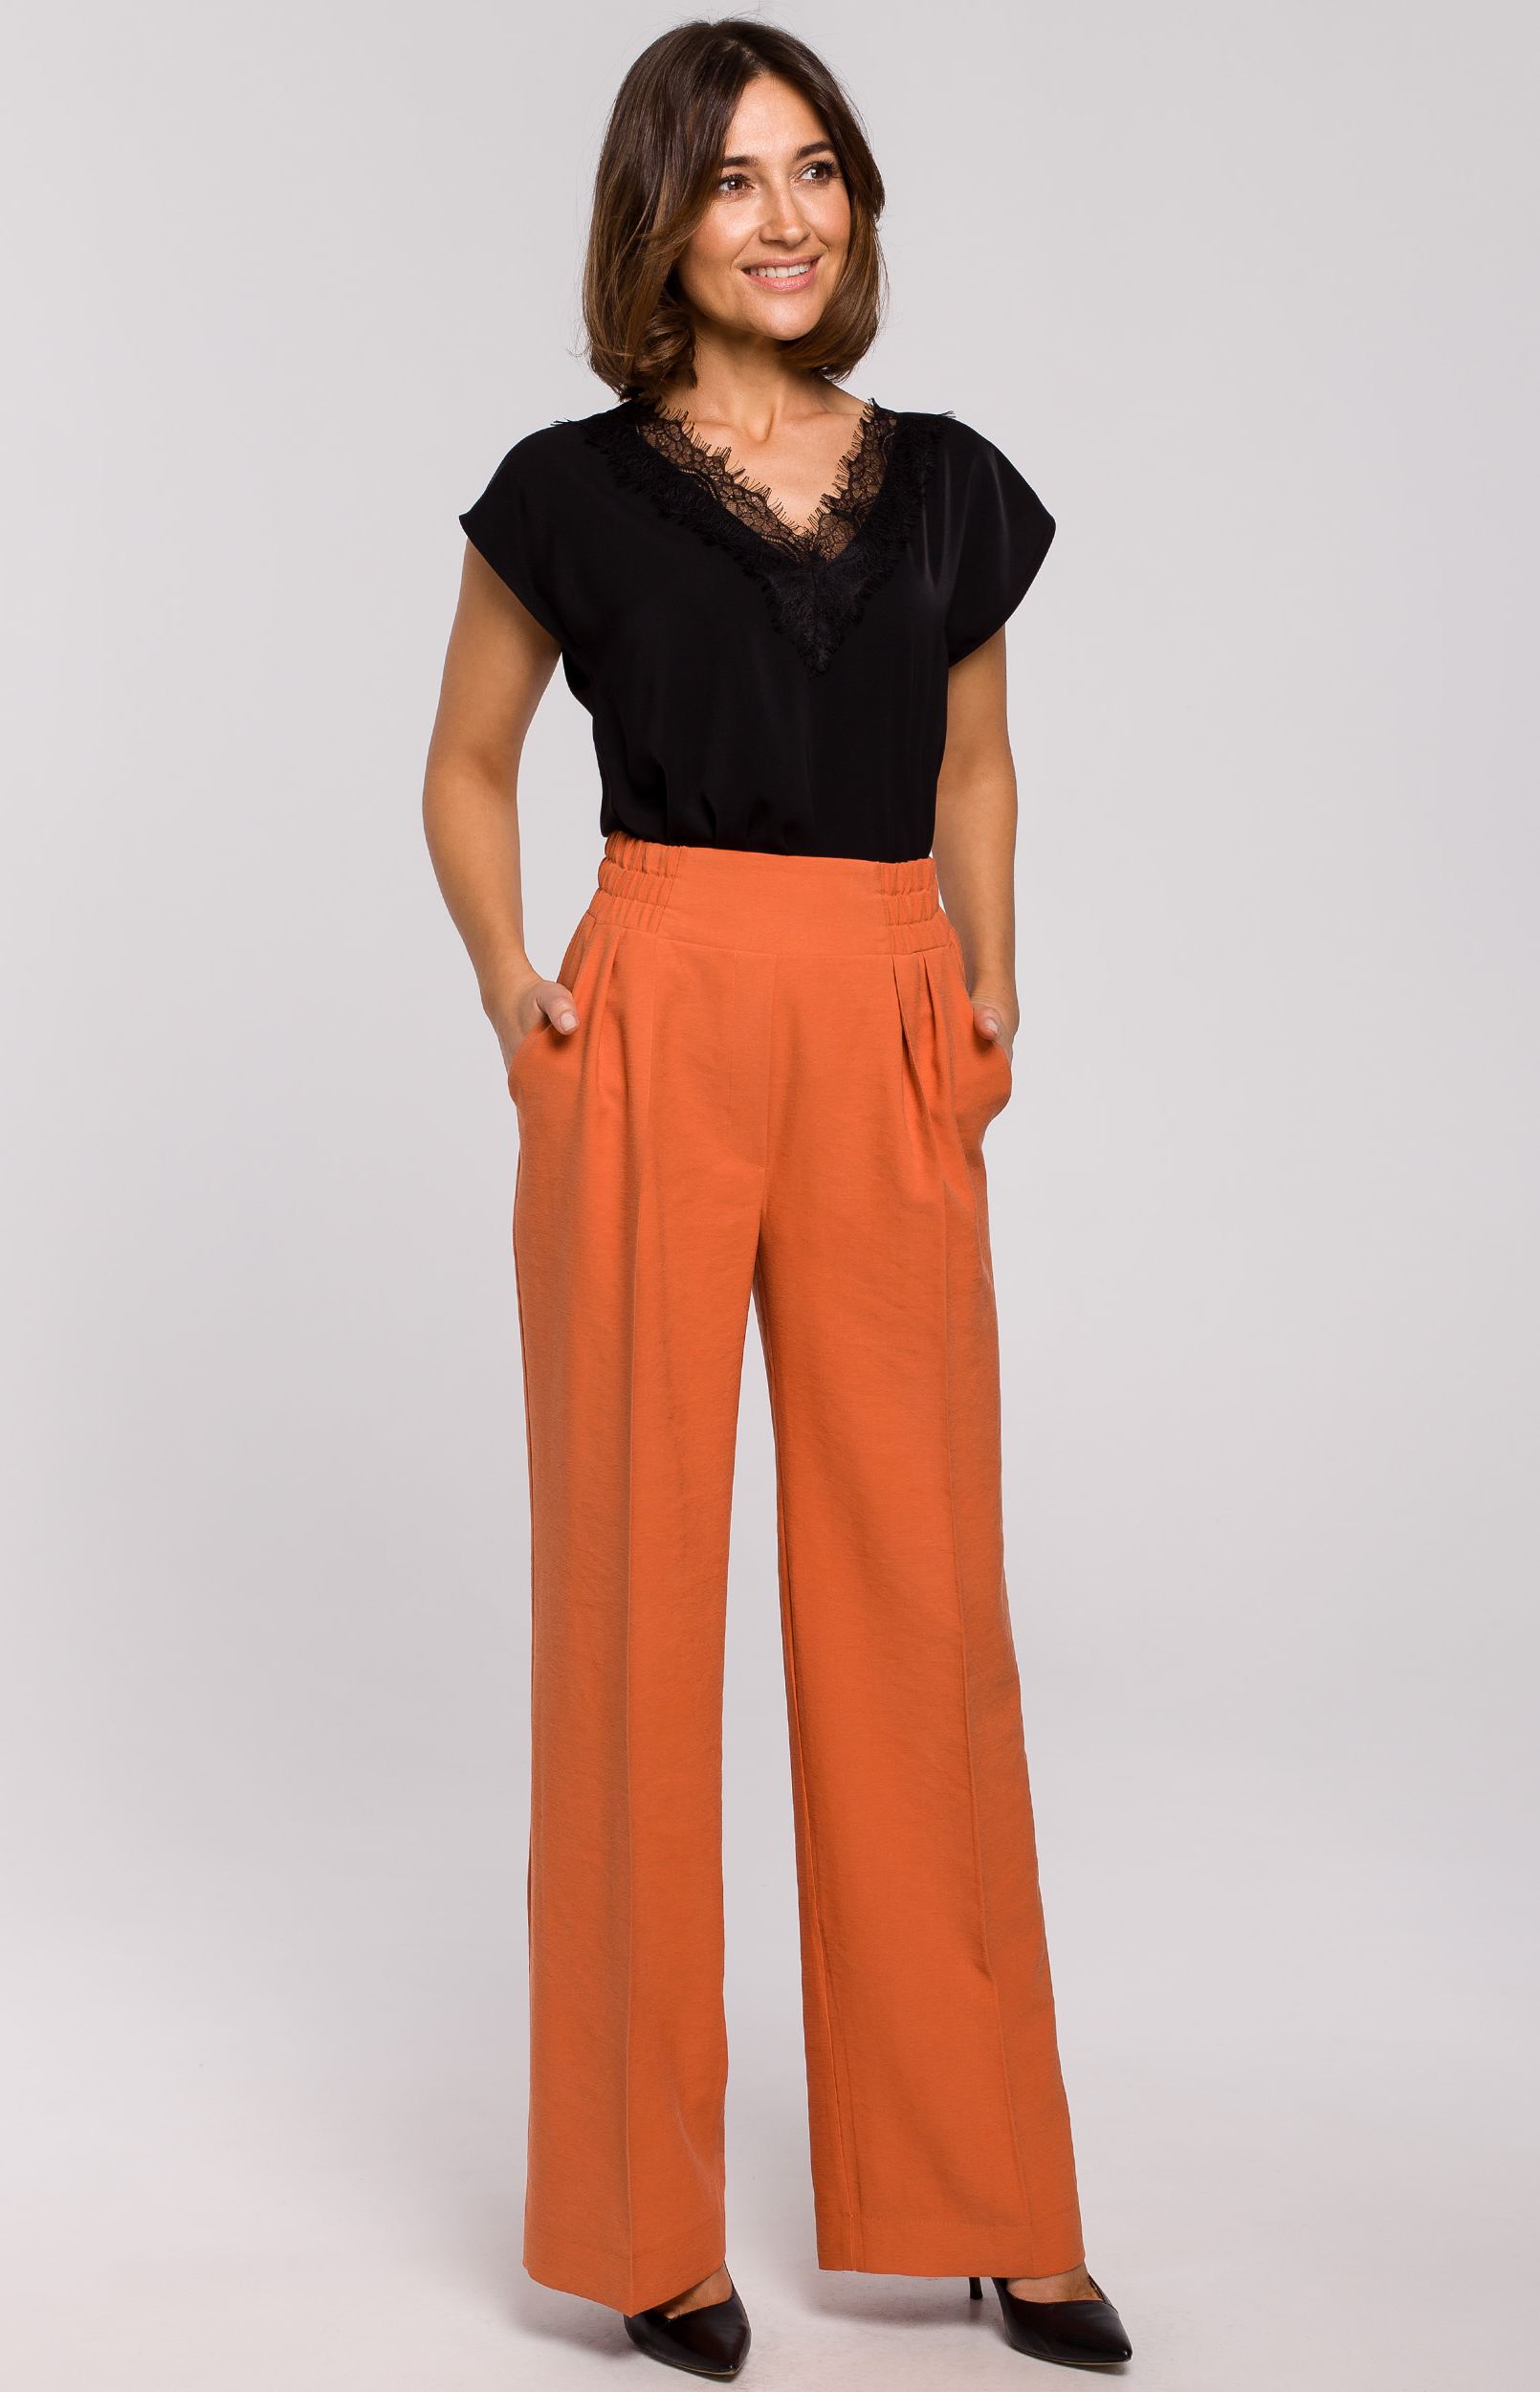 https://www.idresstocode.com/images/Image/pantalon-femme-large-orange.jpg